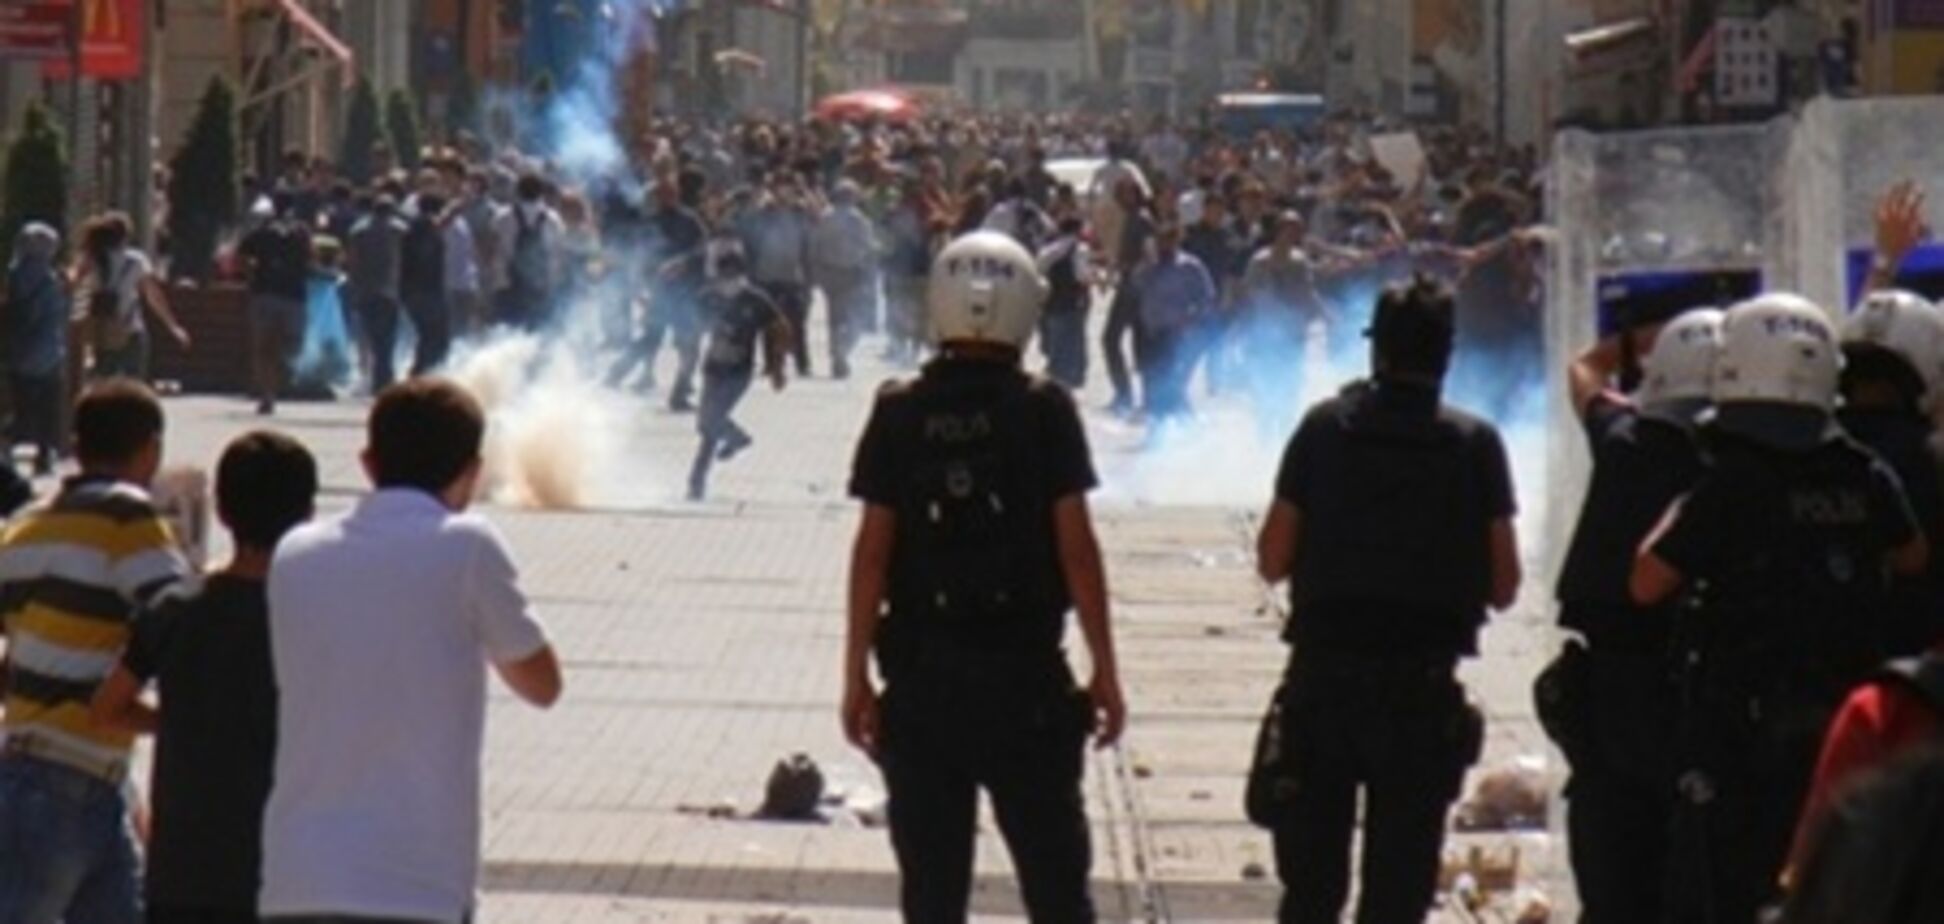 ООН призывает Турцию расследовать поведение полиции